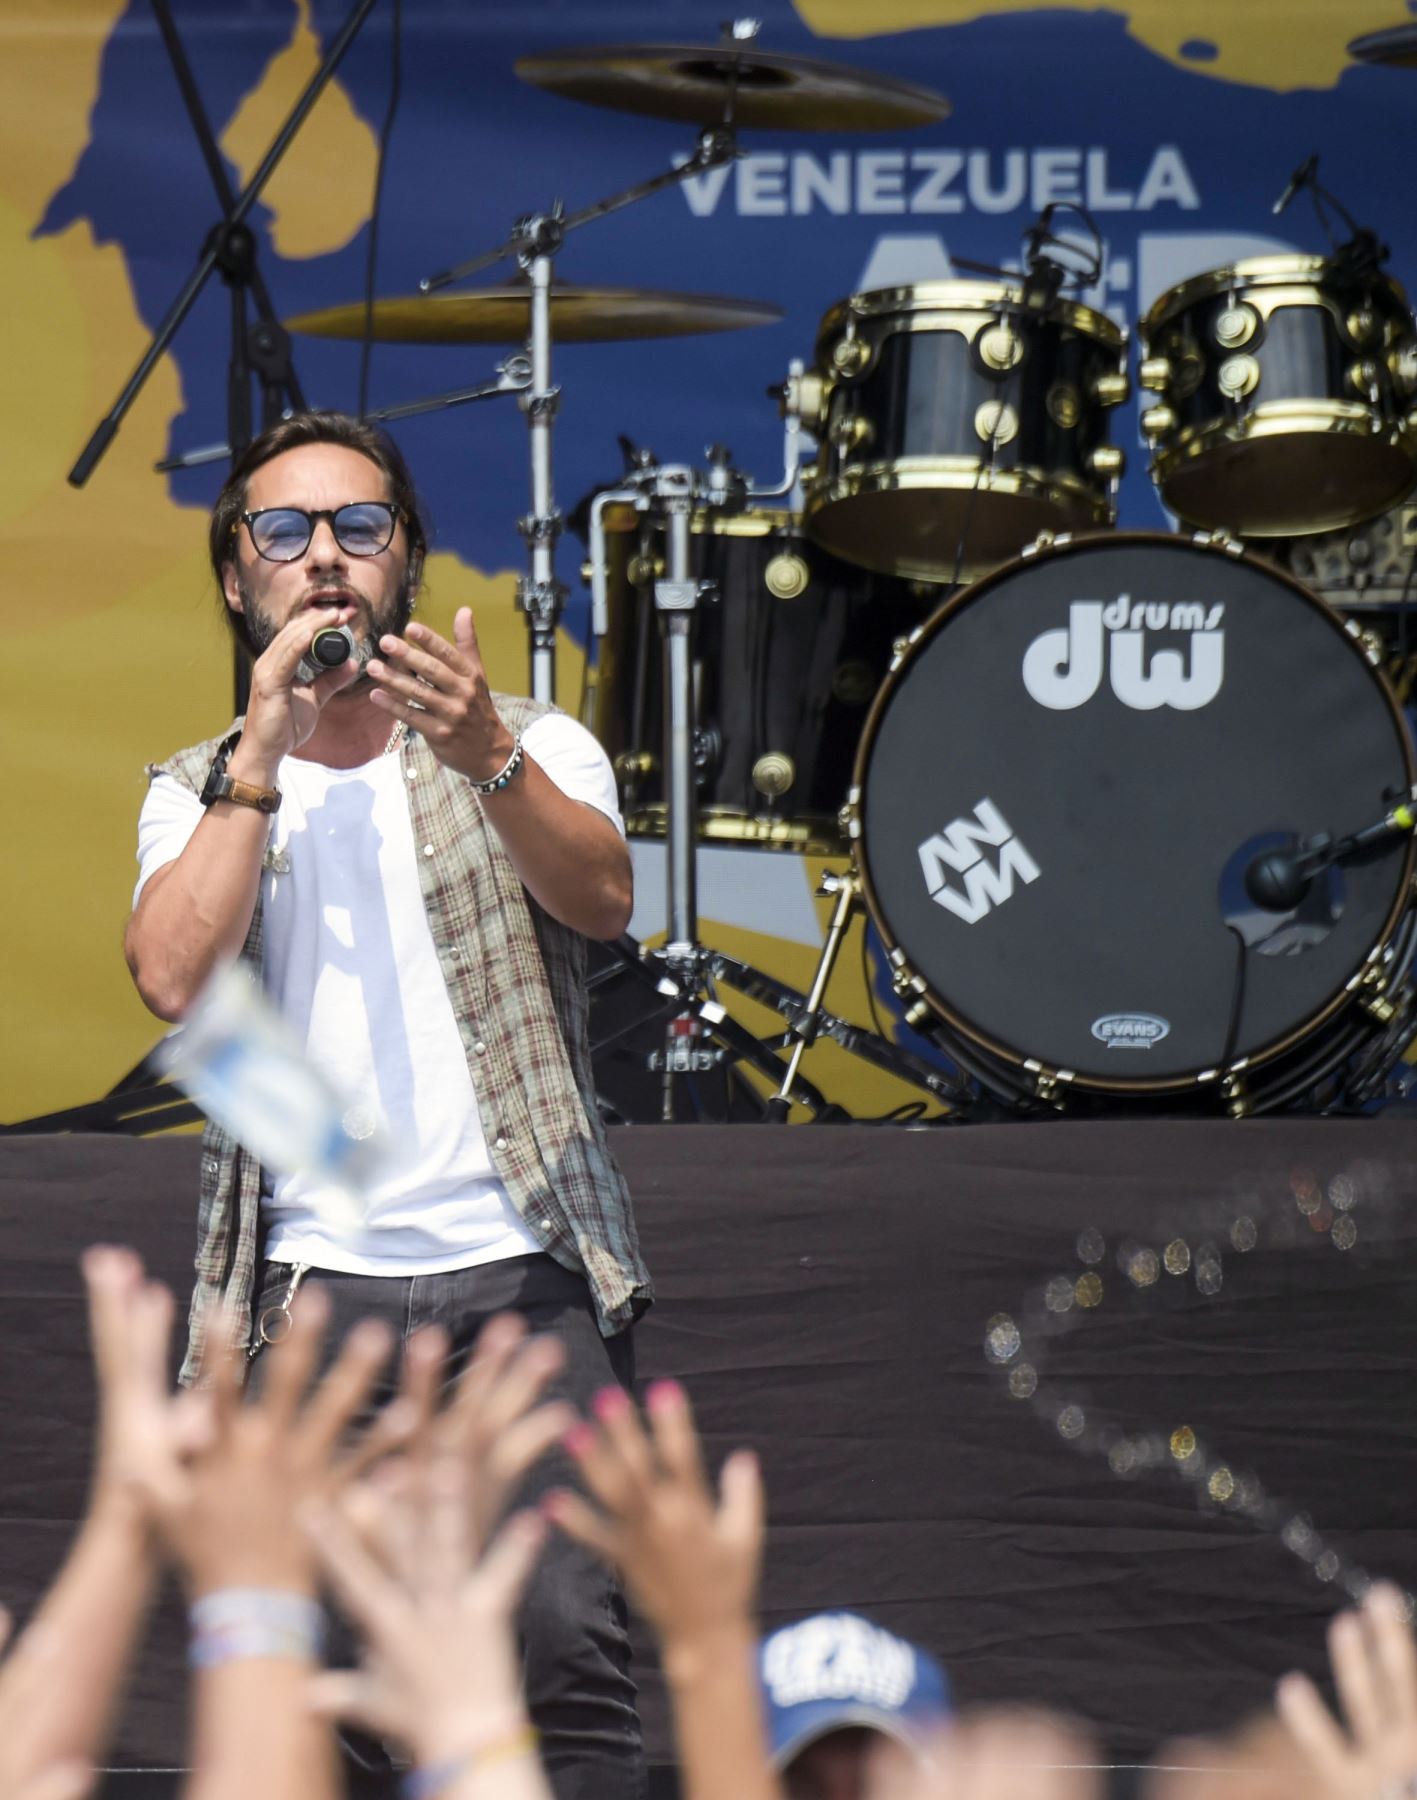 El cantante argentino Diego Torres, actúa durante el concierto "Venezuela Aid Live", organizado para recaudar fondos para el esfuerzo de ayuda venezolano en el Puente Internacional Tienditas en Cucuta, Colombia. AFP